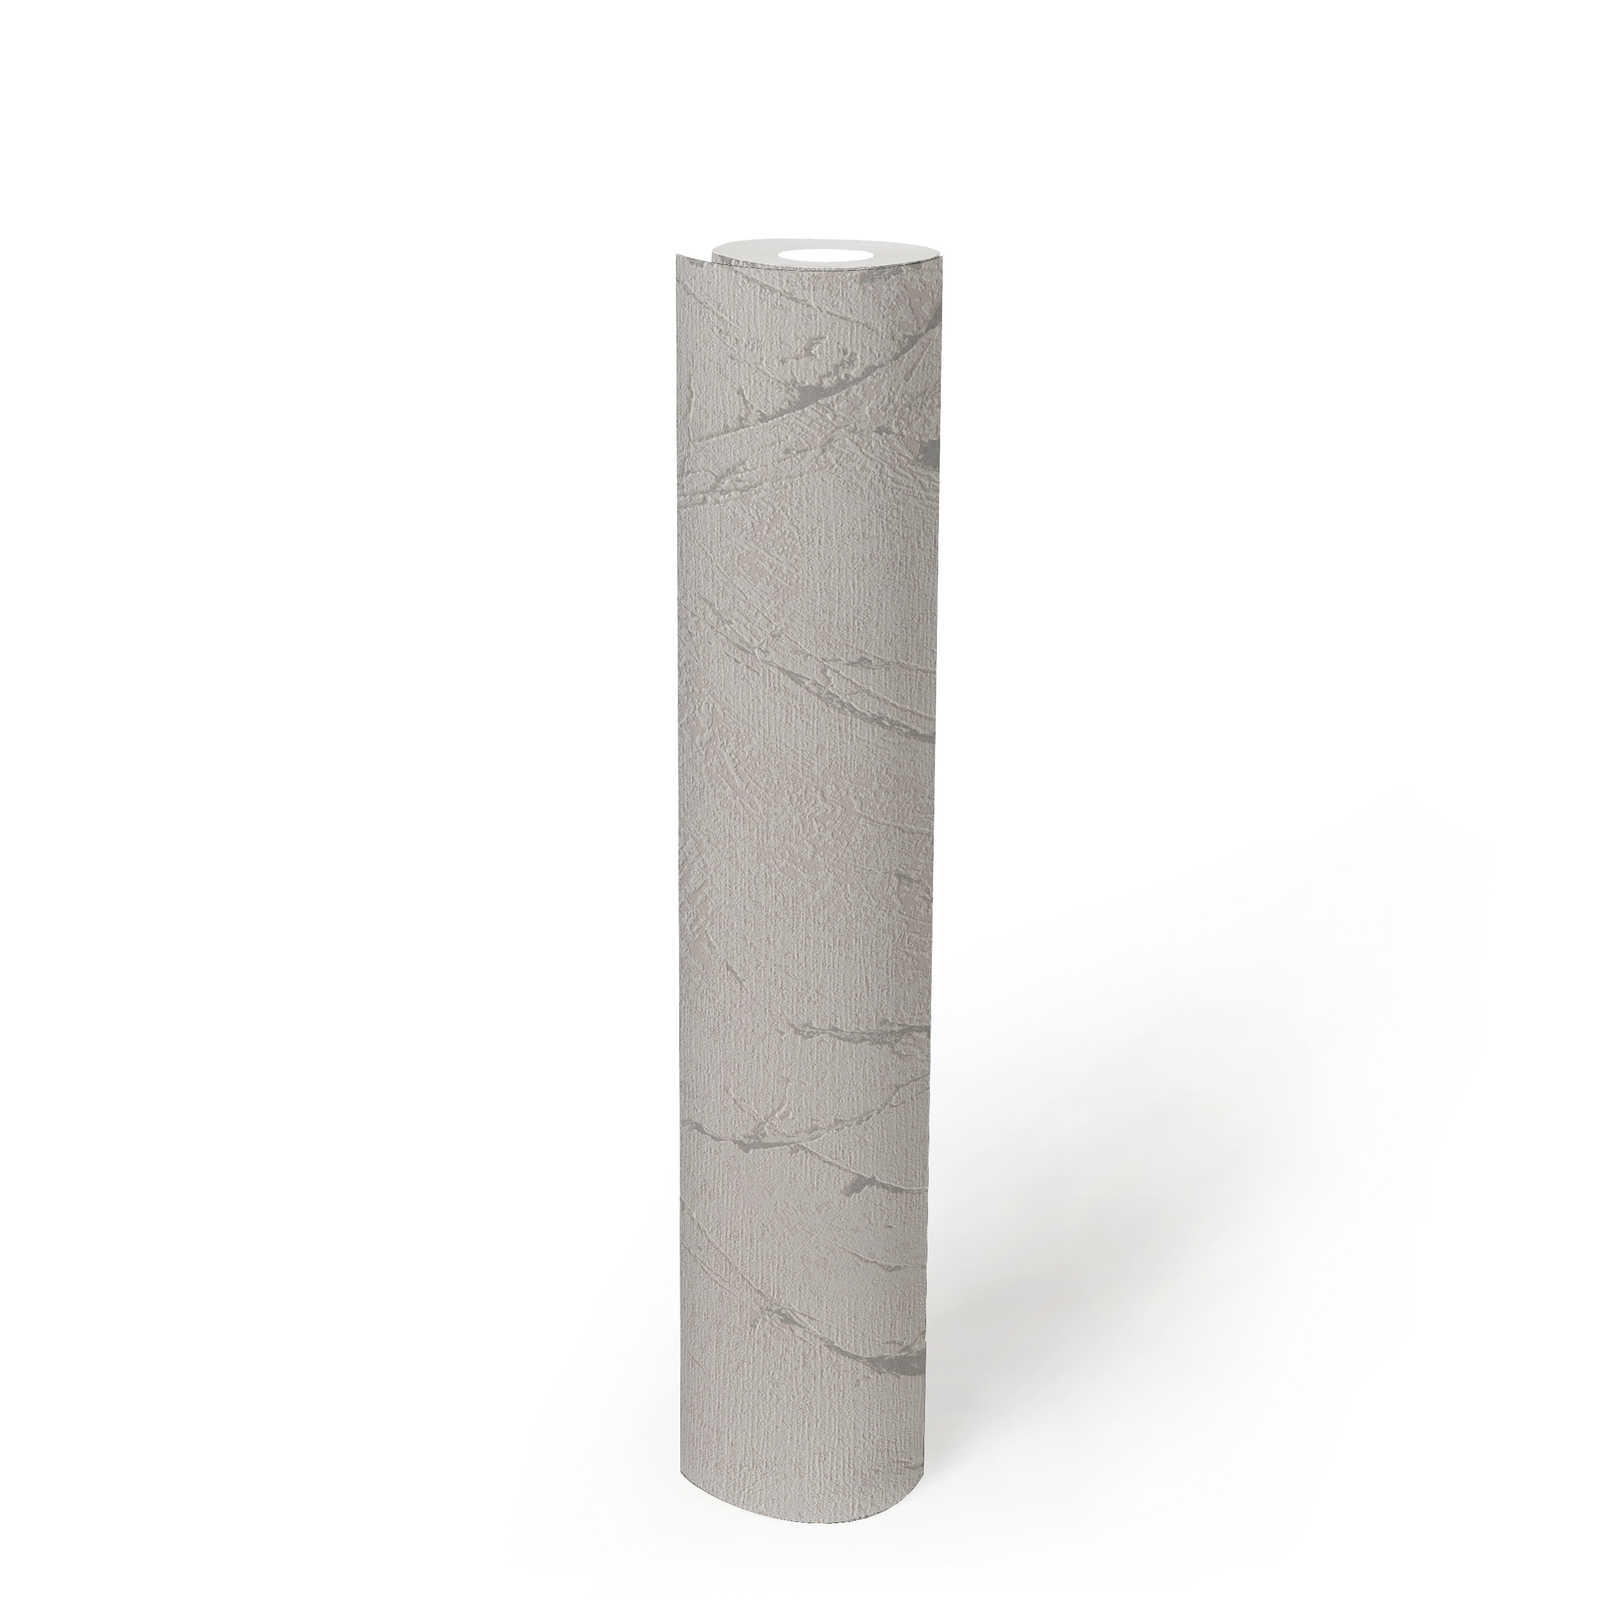             Vliesbehang in pleisterlook met metallic effect - grijs, zilver, metallic
        